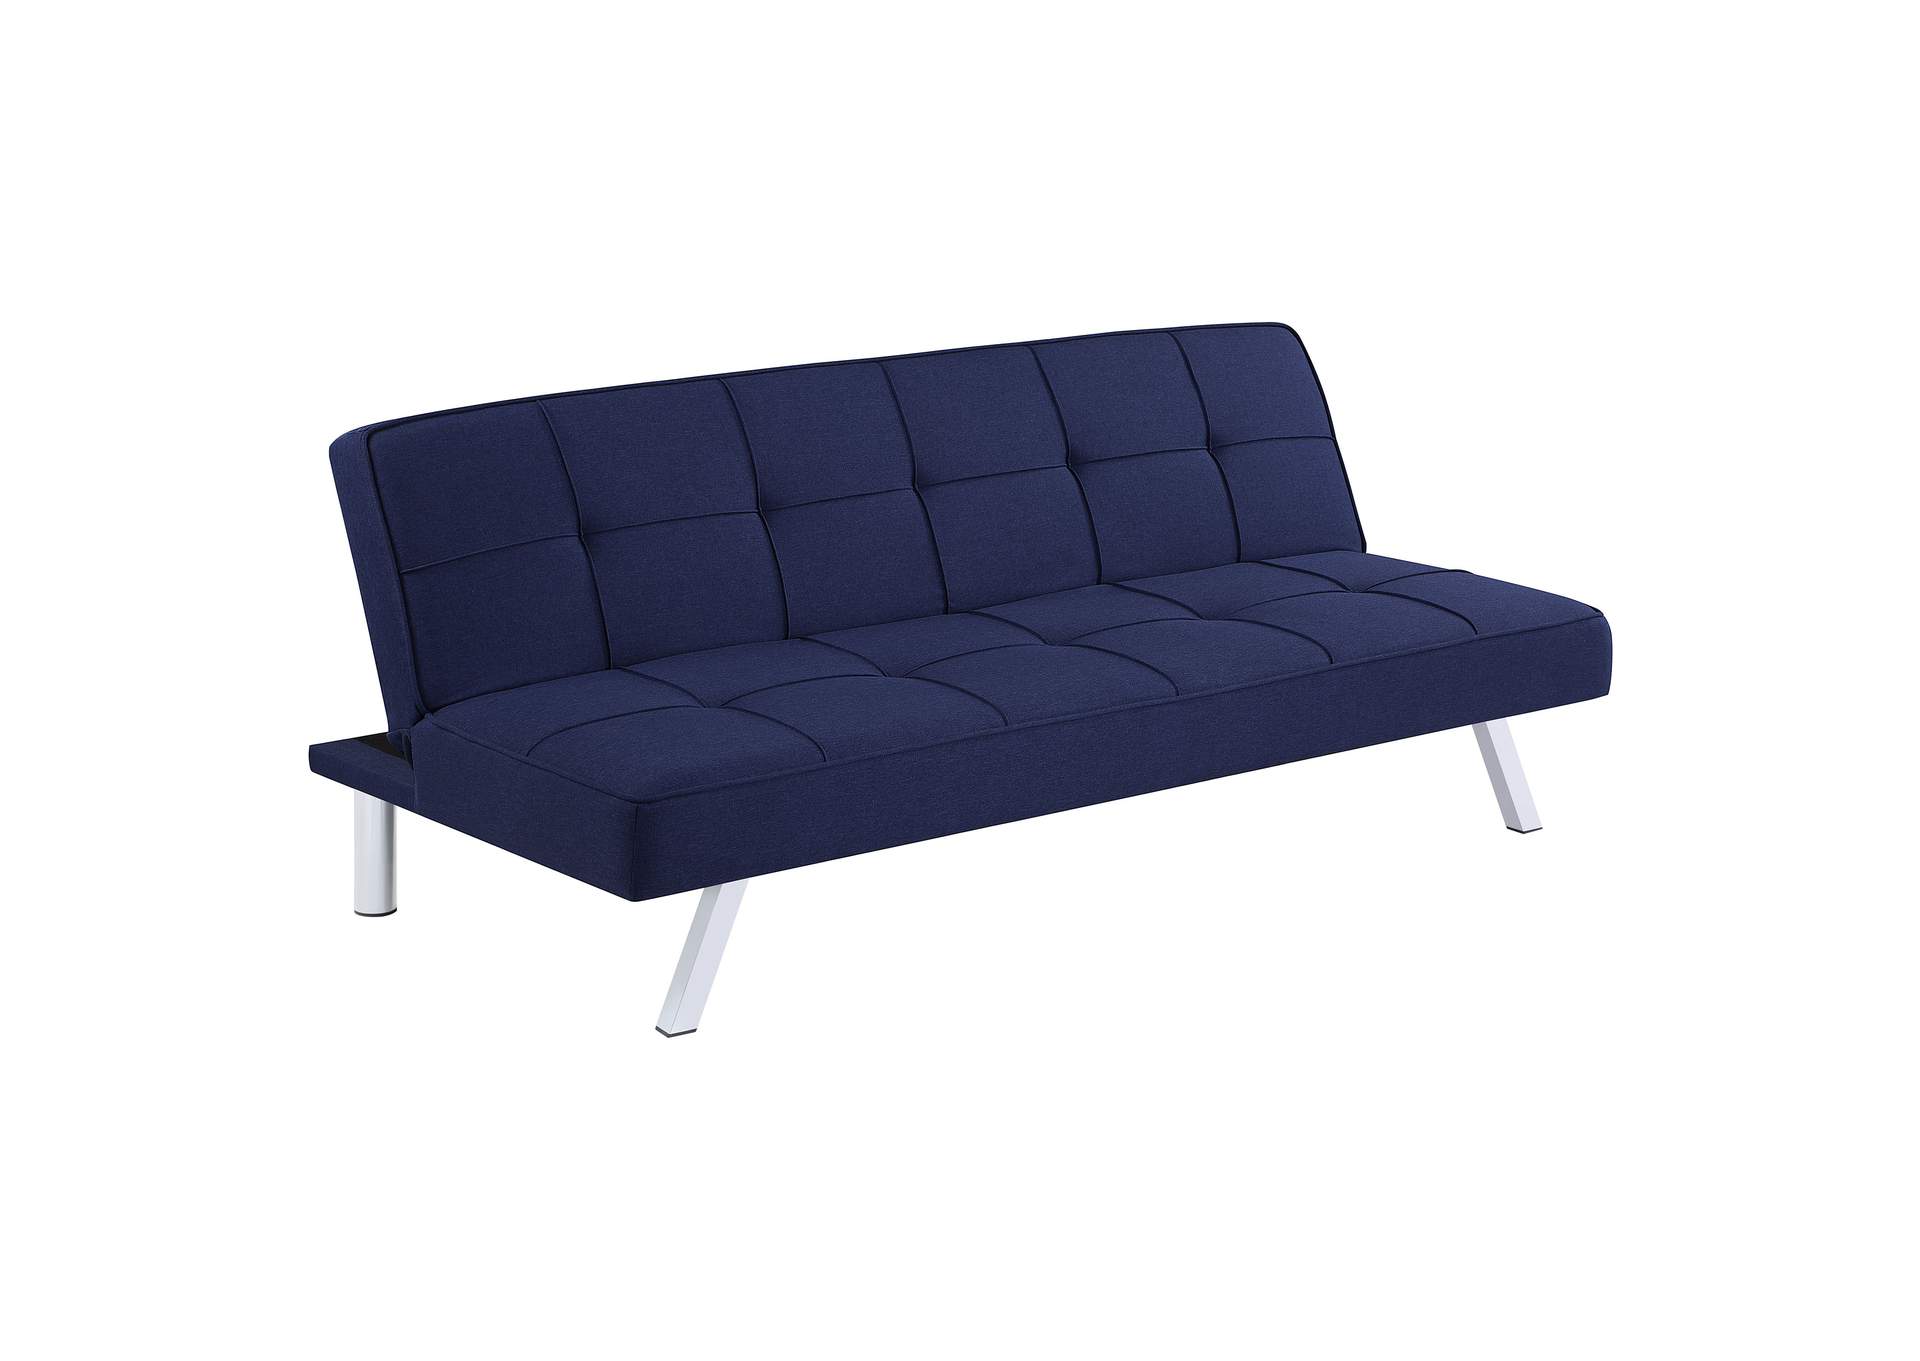 Joel Upholstered Tufted Sofa Bed,Coaster Furniture